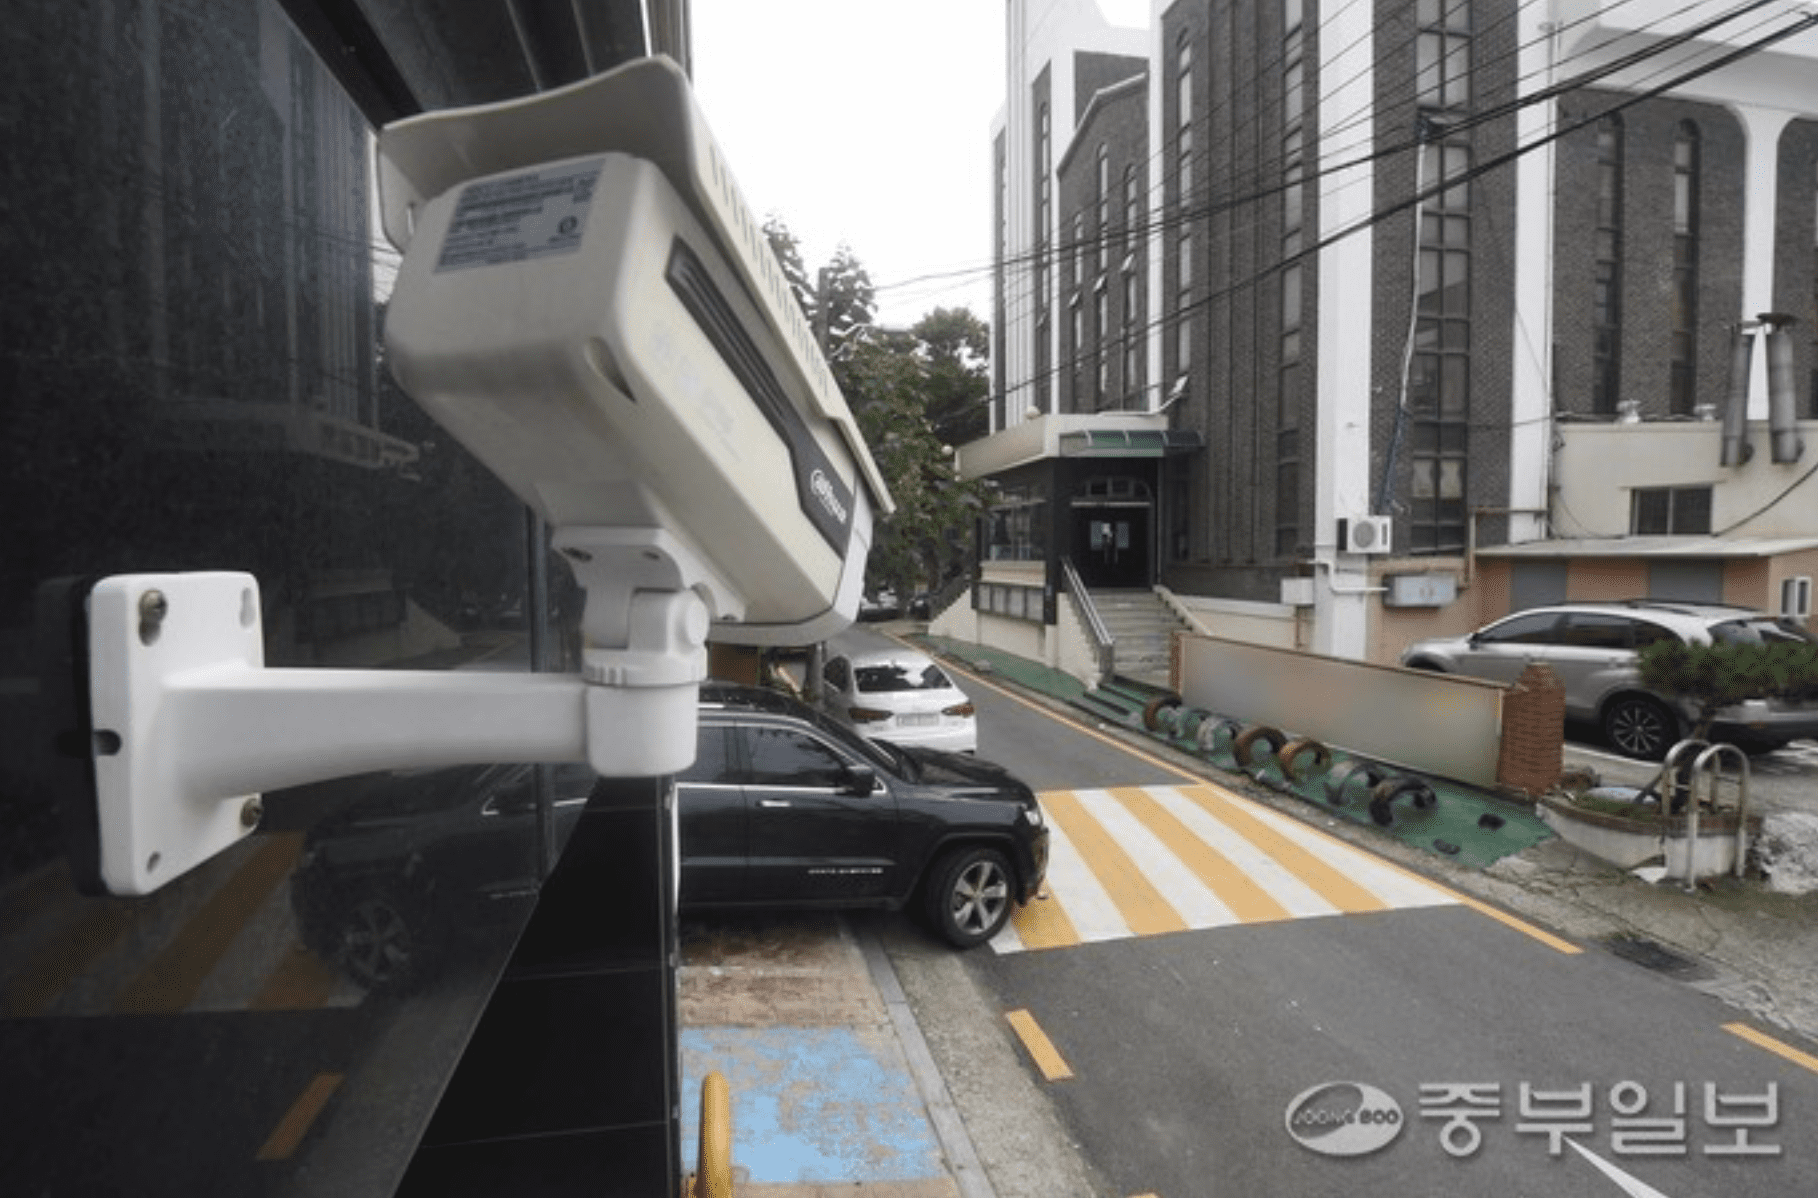 CCTV theo dõi tội phạm ở Hàn Quốc